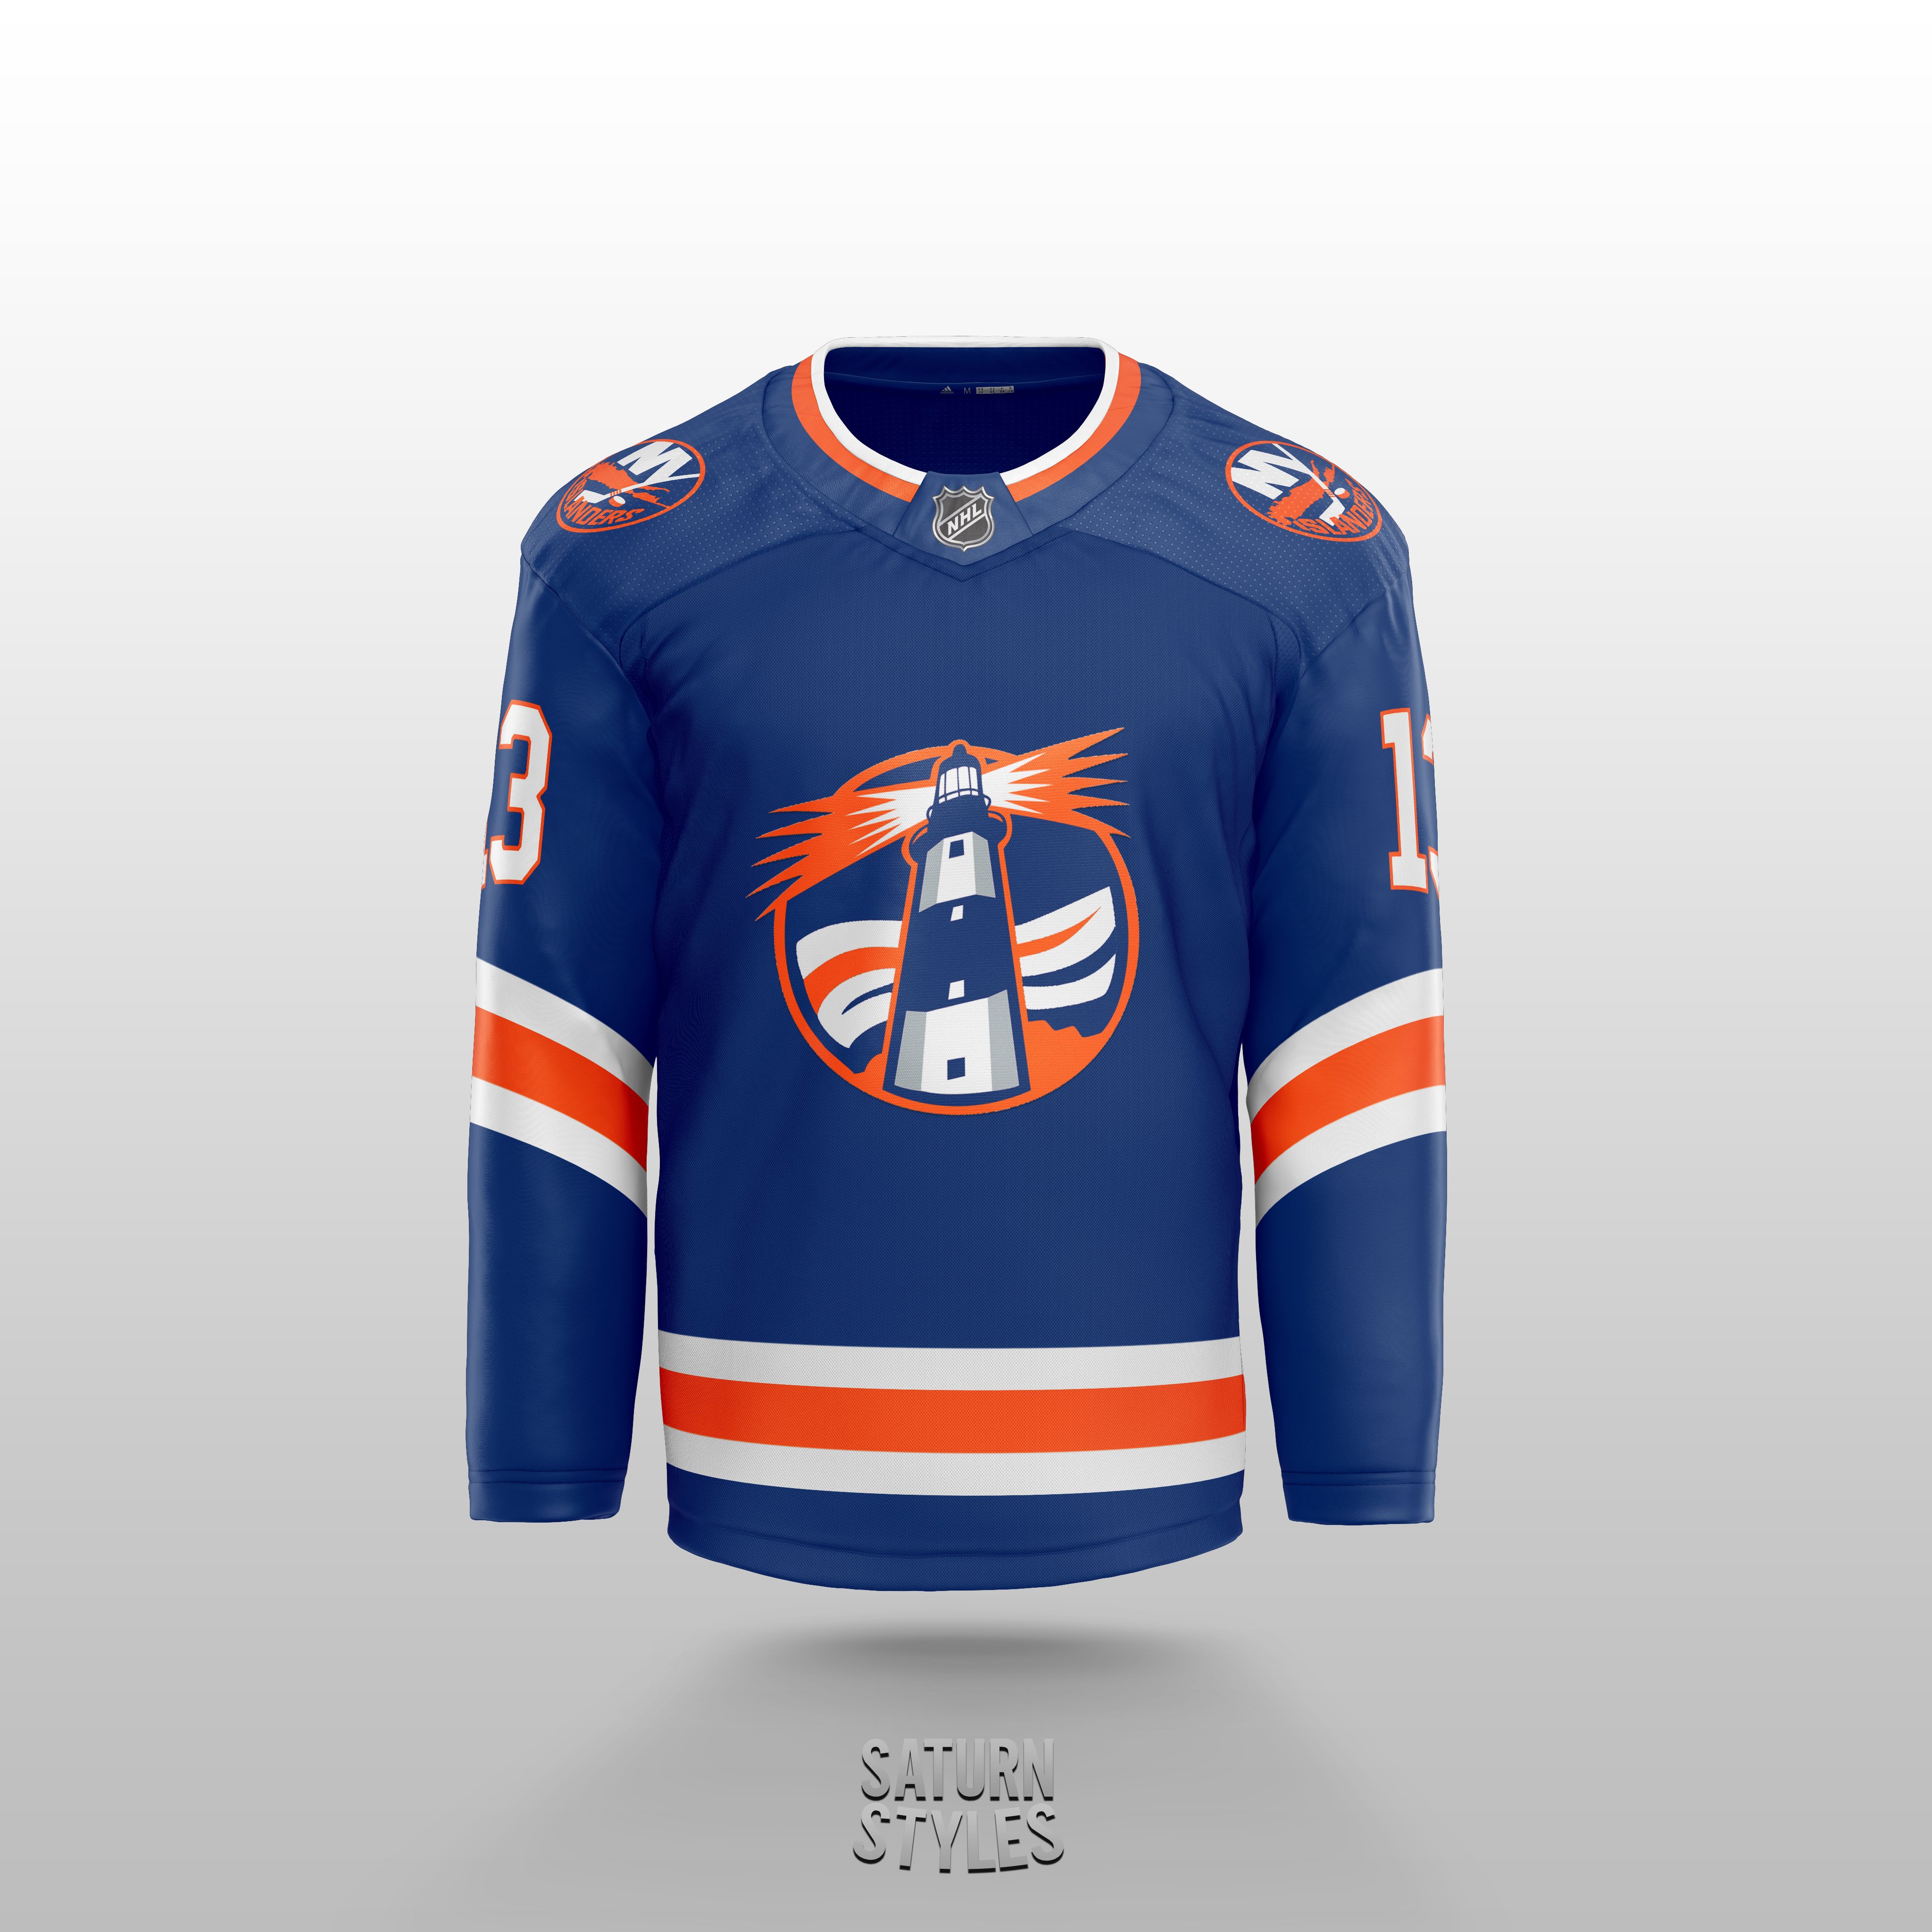 New York Islanders - Concept Jersey Set : r/NewYorkIslanders